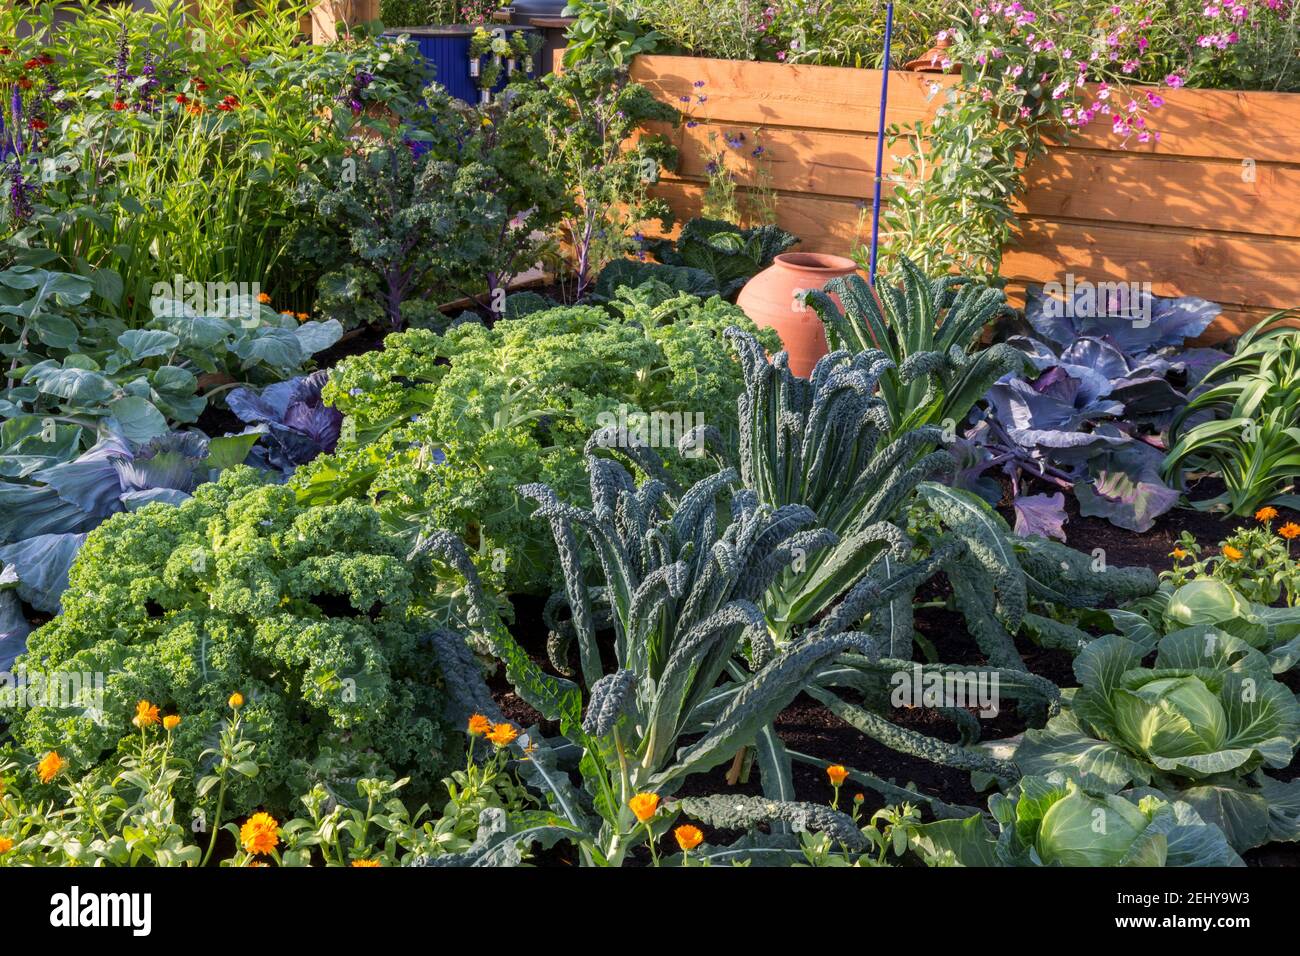 Petit potager biologique avec légumes cultivés en rangées - poireaux chou rouge chou kale Nero de toscano frisé Summer England UK Banque D'Images